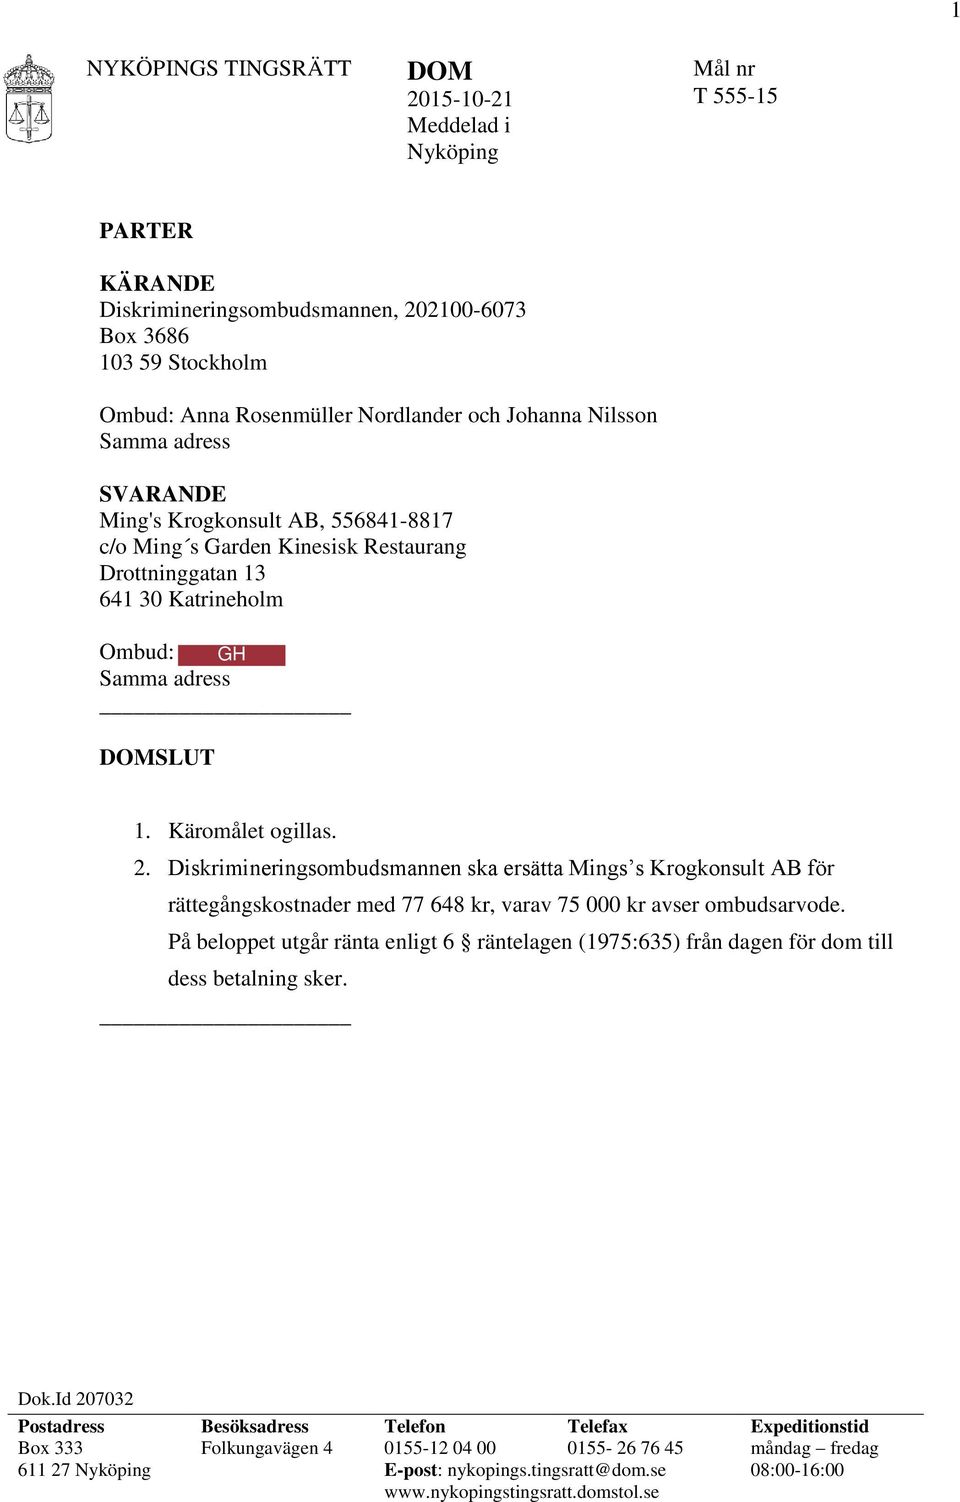 Diskrimineringsombudsmannen ska ersätta Mings s Krogkonsult AB för rättegångskostnader med 77 648 kr, varav 75 000 kr avser ombudsarvode.